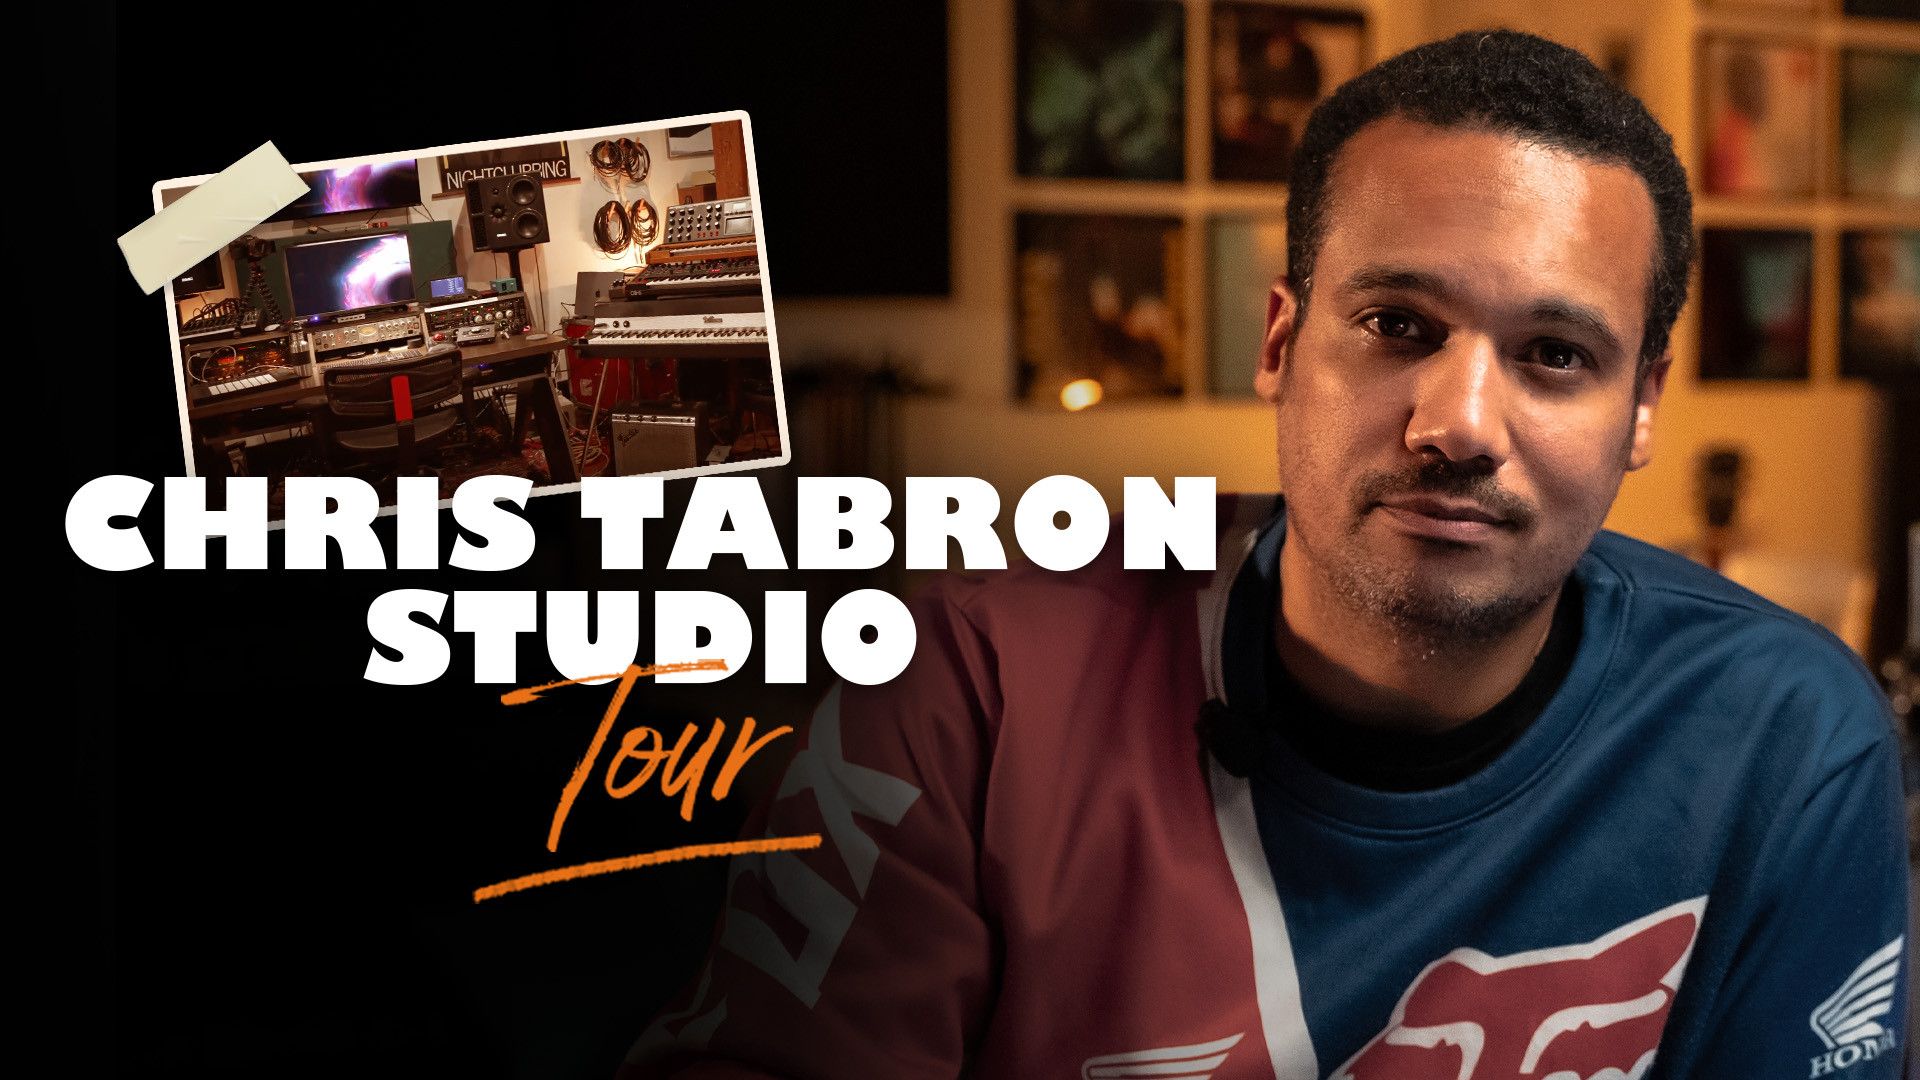 Chris Tabron Studio Tour